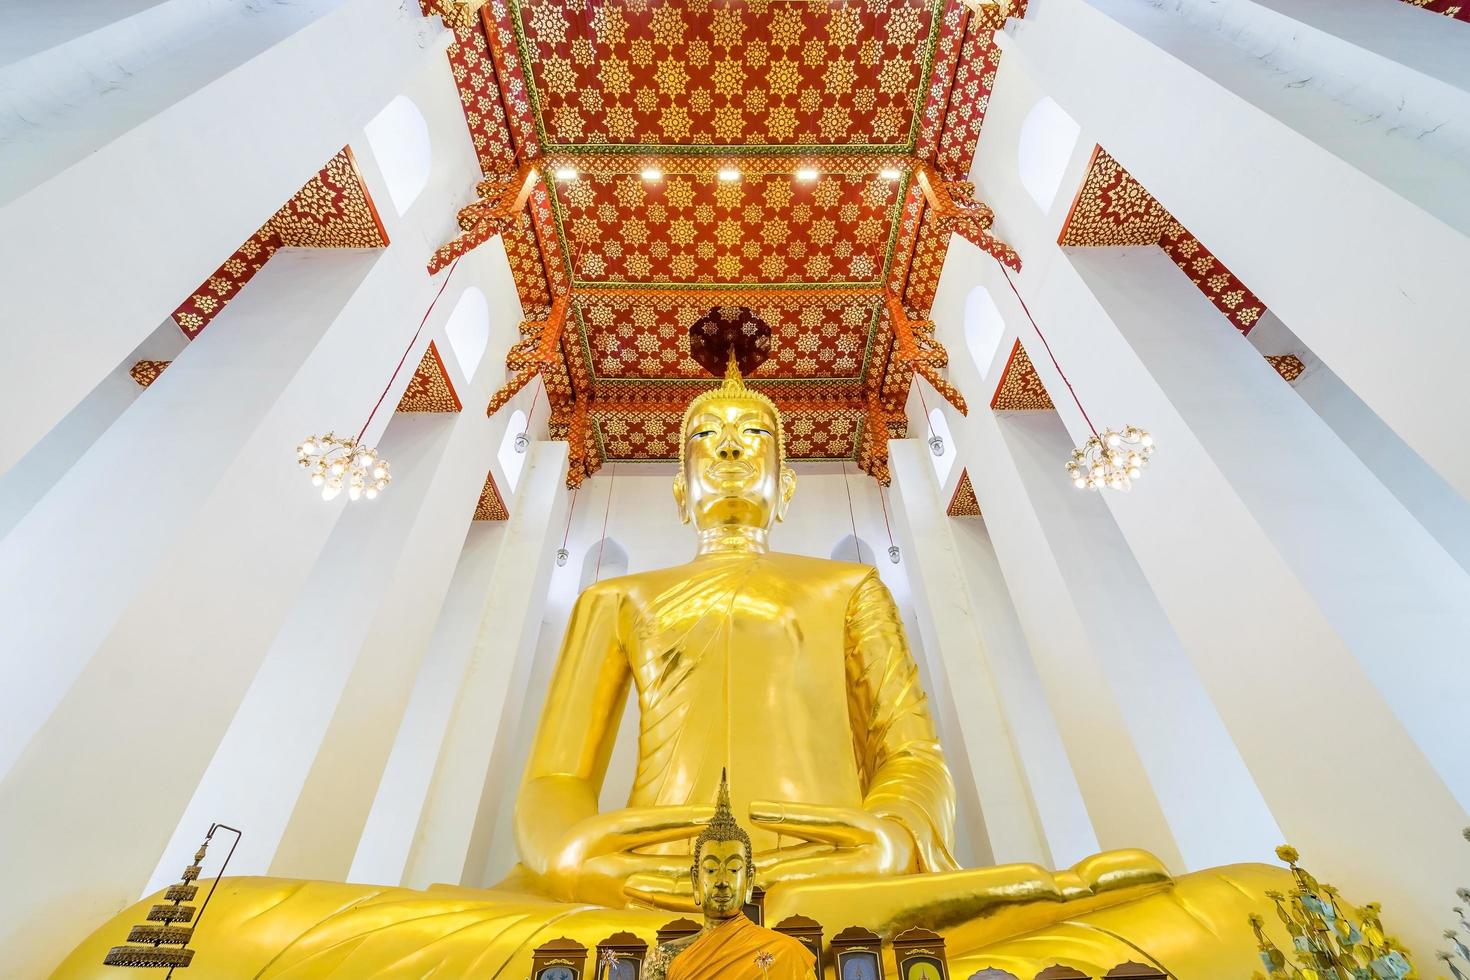 Golden Buddha at Wat Chaiyo Warawithan temple, Angthong province, Thailand photo